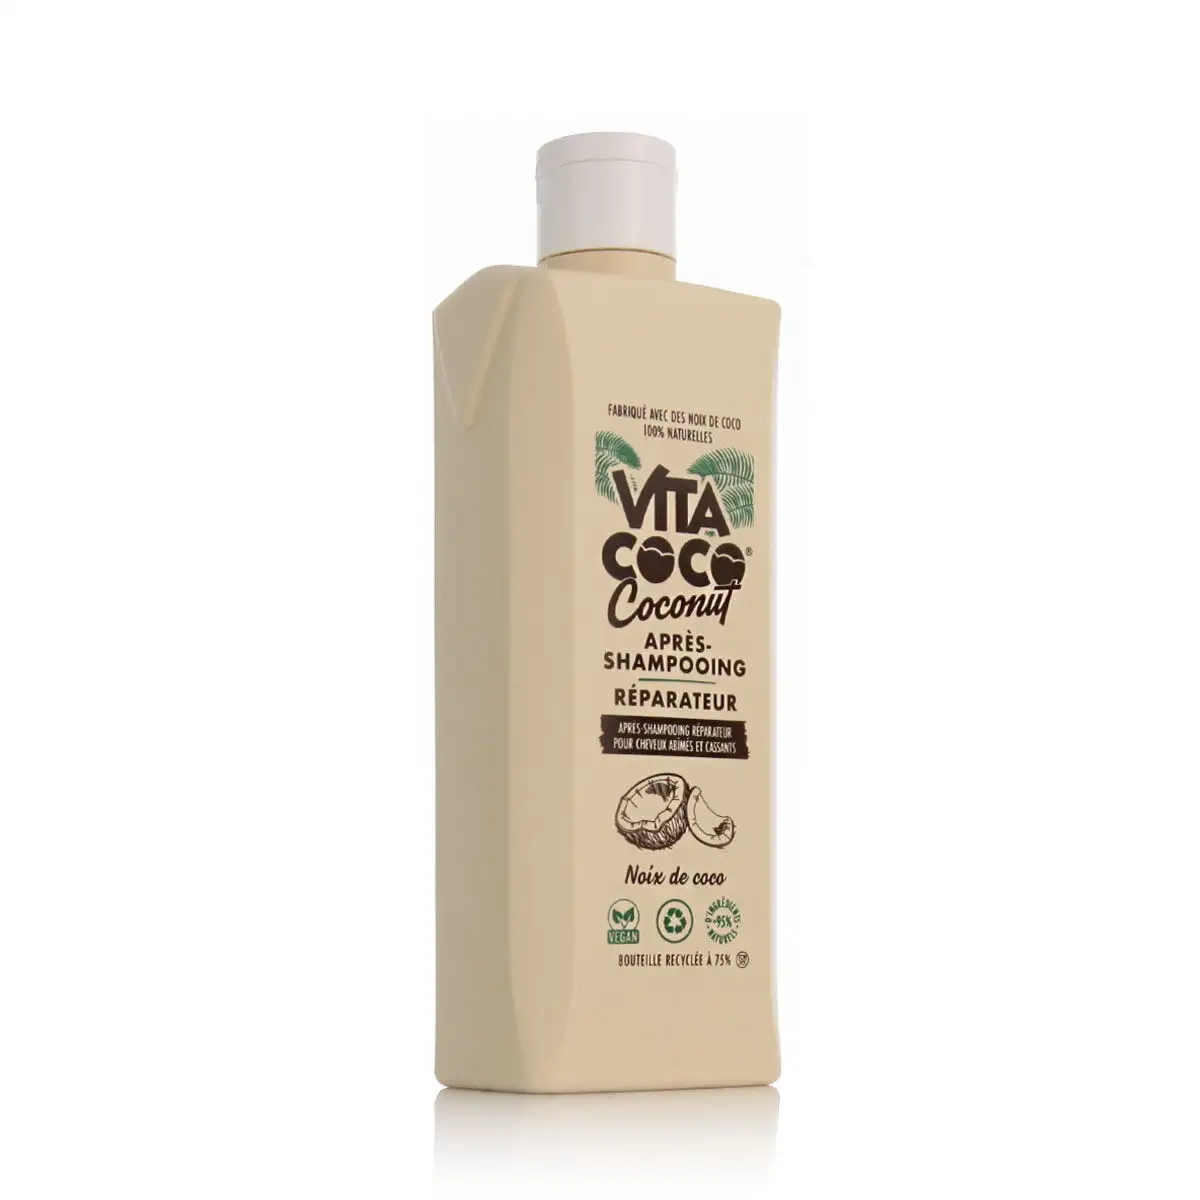 Apres shampooing vita coco repair 400 ml_3438. DIAYTAR SENEGAL - Où la Qualité et la Diversité Fusionnent. Explorez notre boutique en ligne pour découvrir une gamme variée de produits qui incarnent l'excellence et l'authenticité.